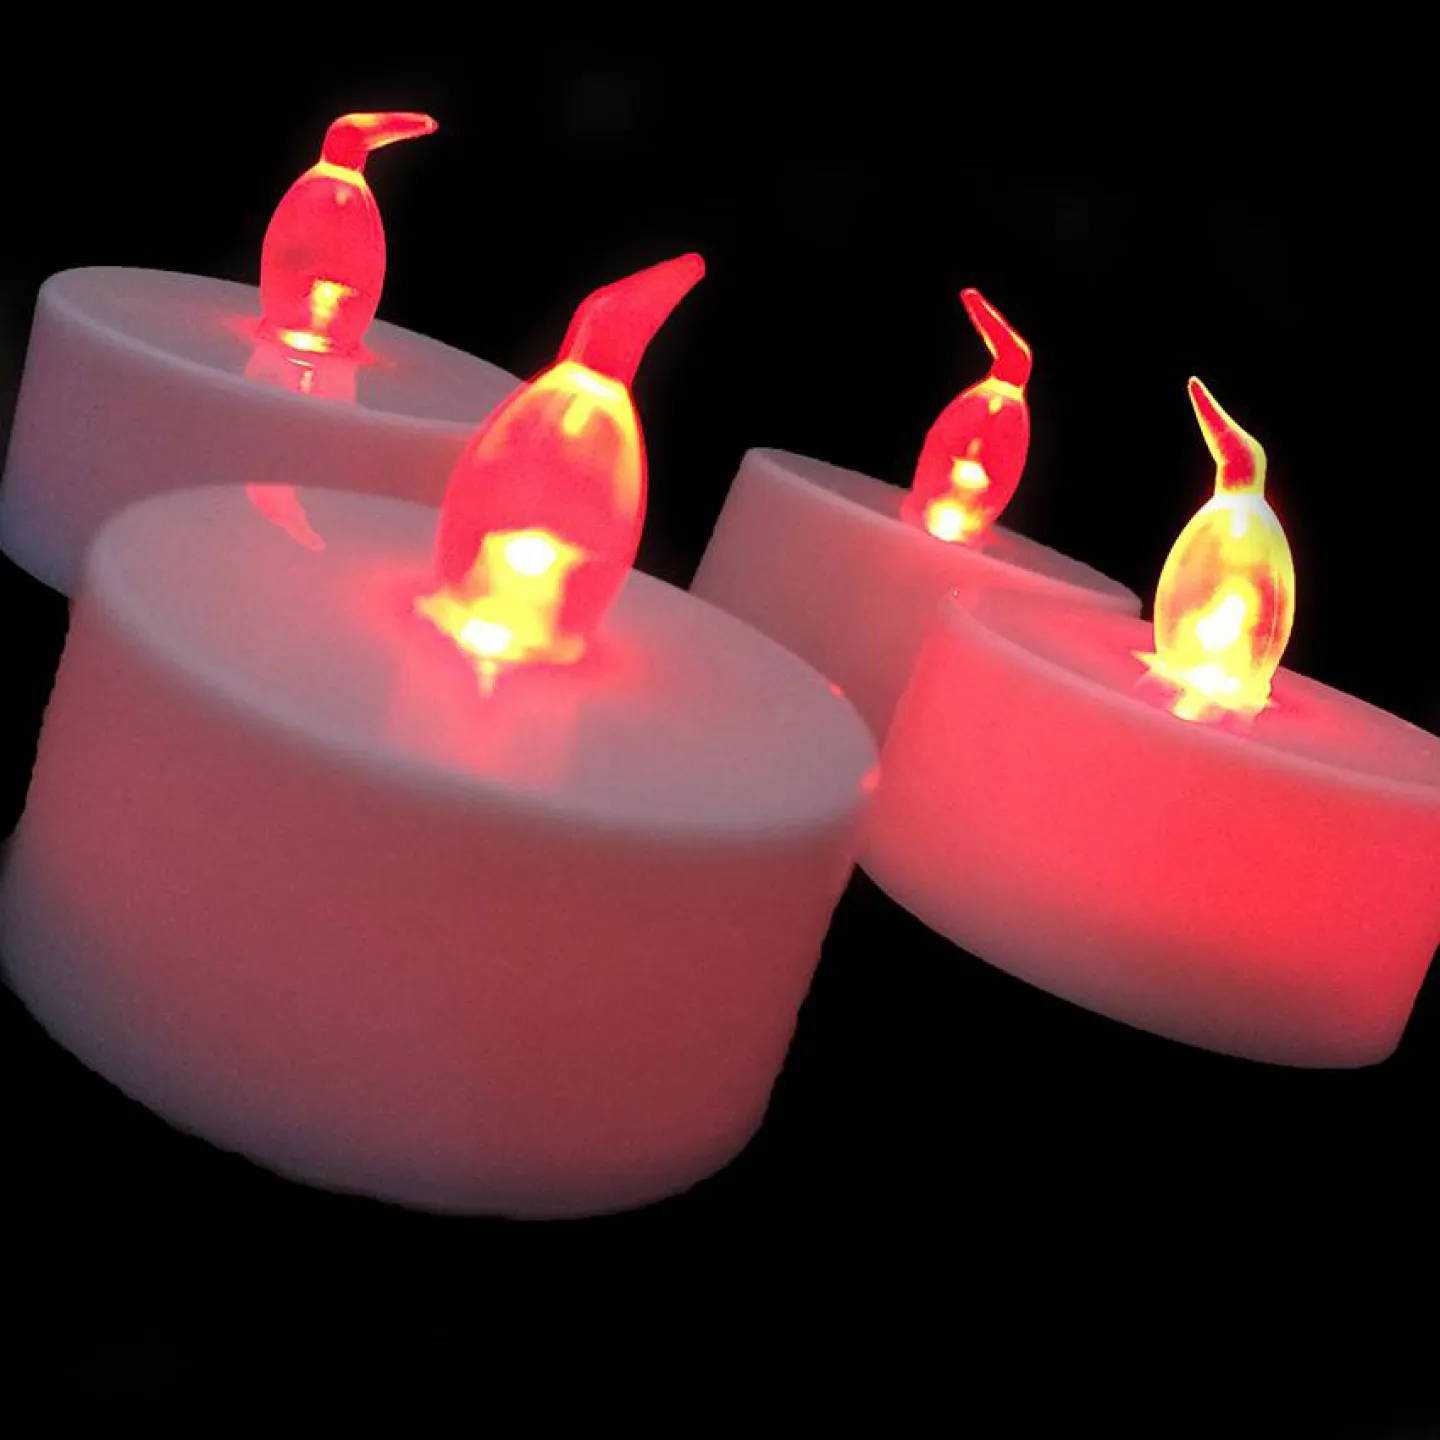 rode kaarsen met led verlichting.